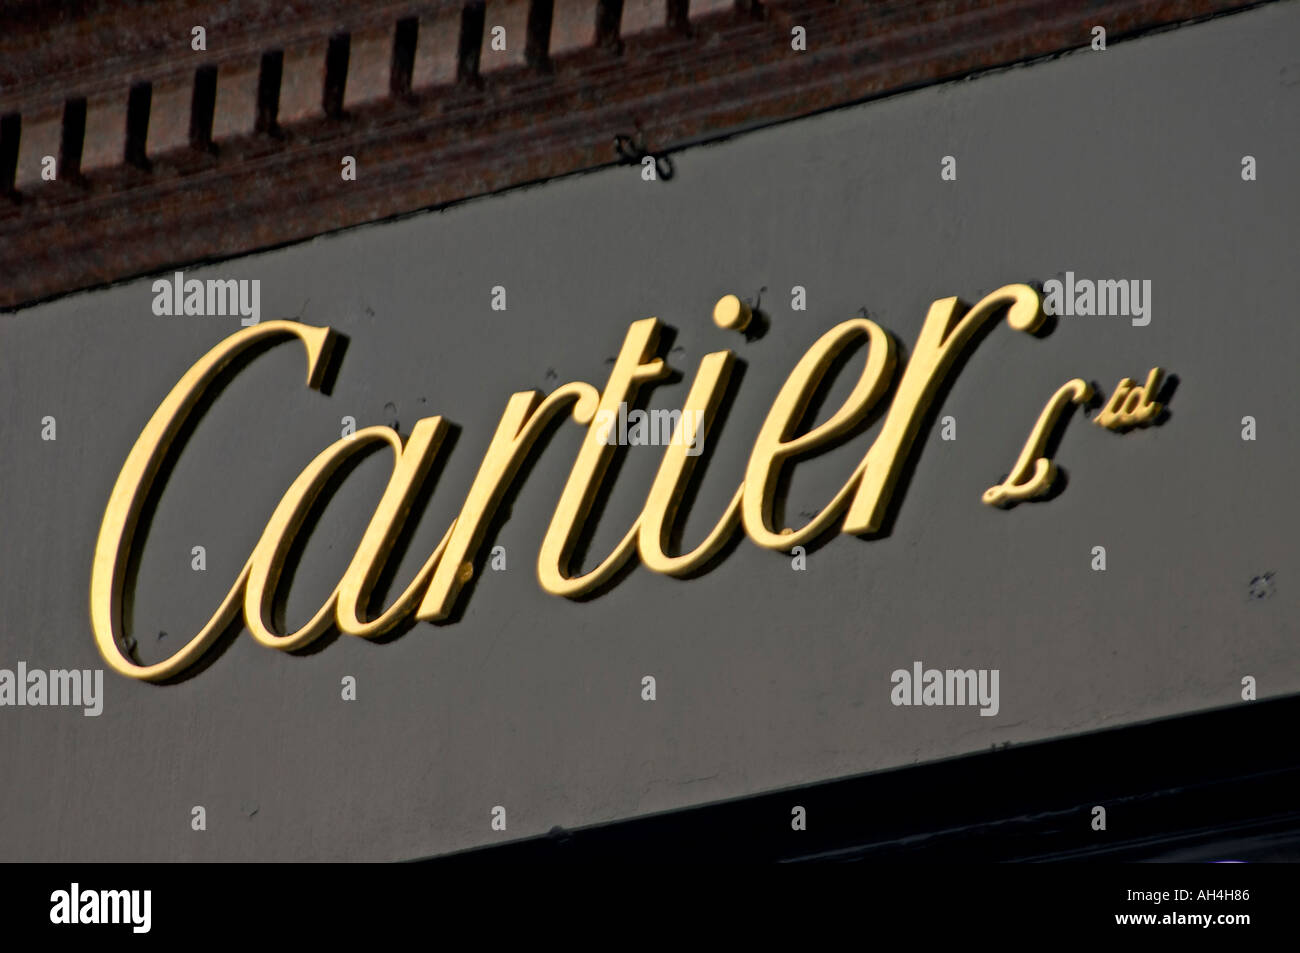 cartier name